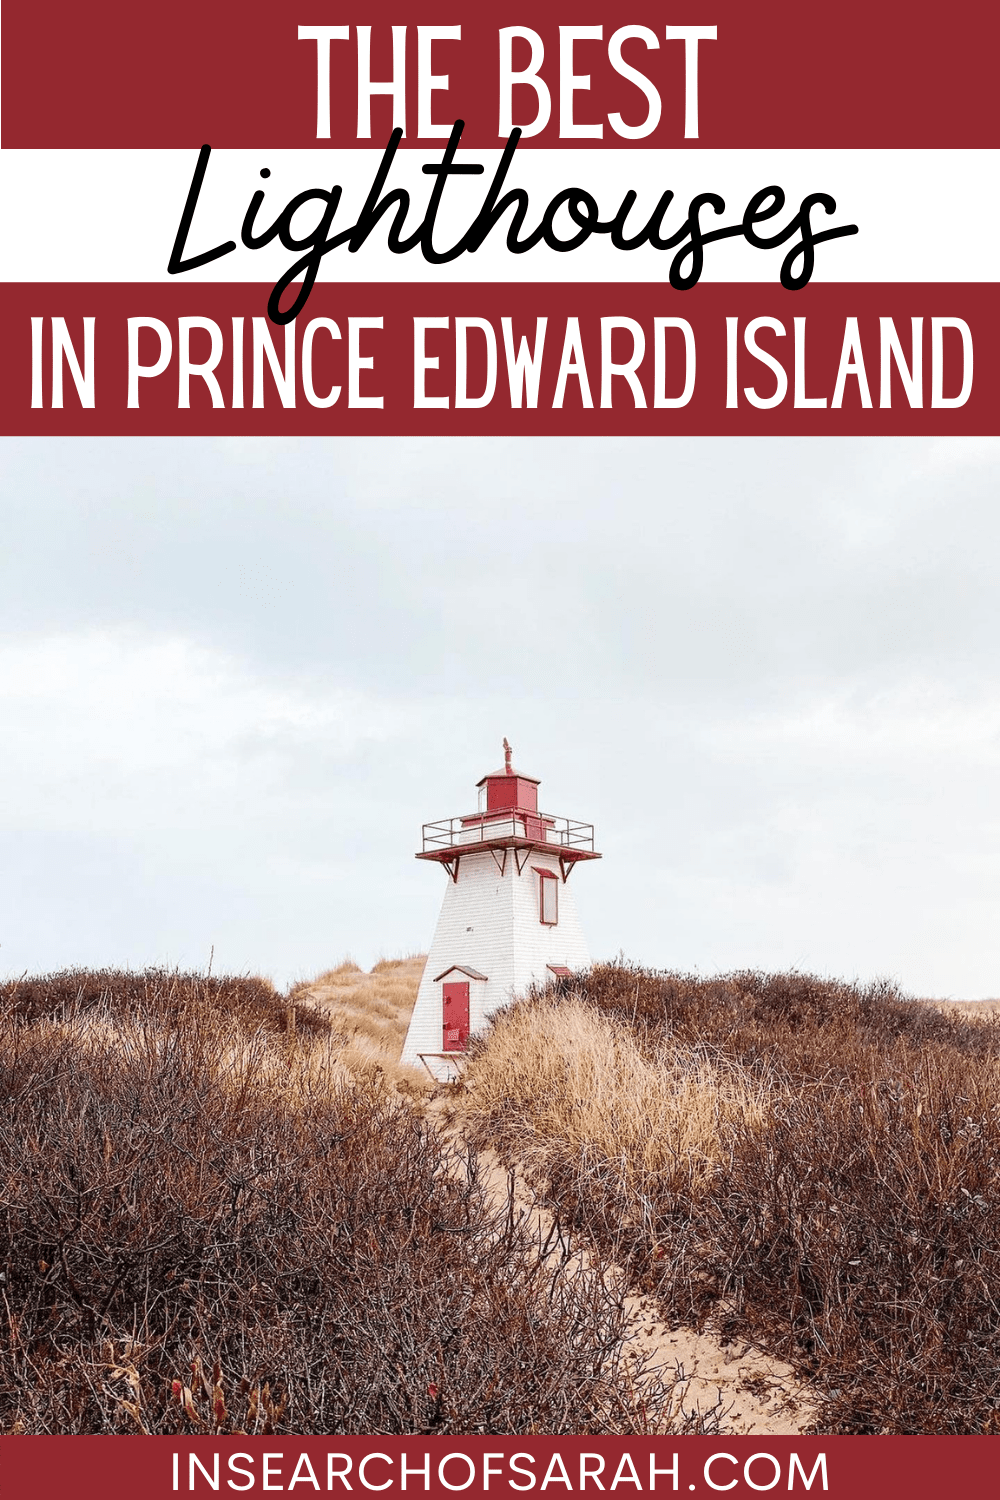 lighthouses of Prince Edward Island